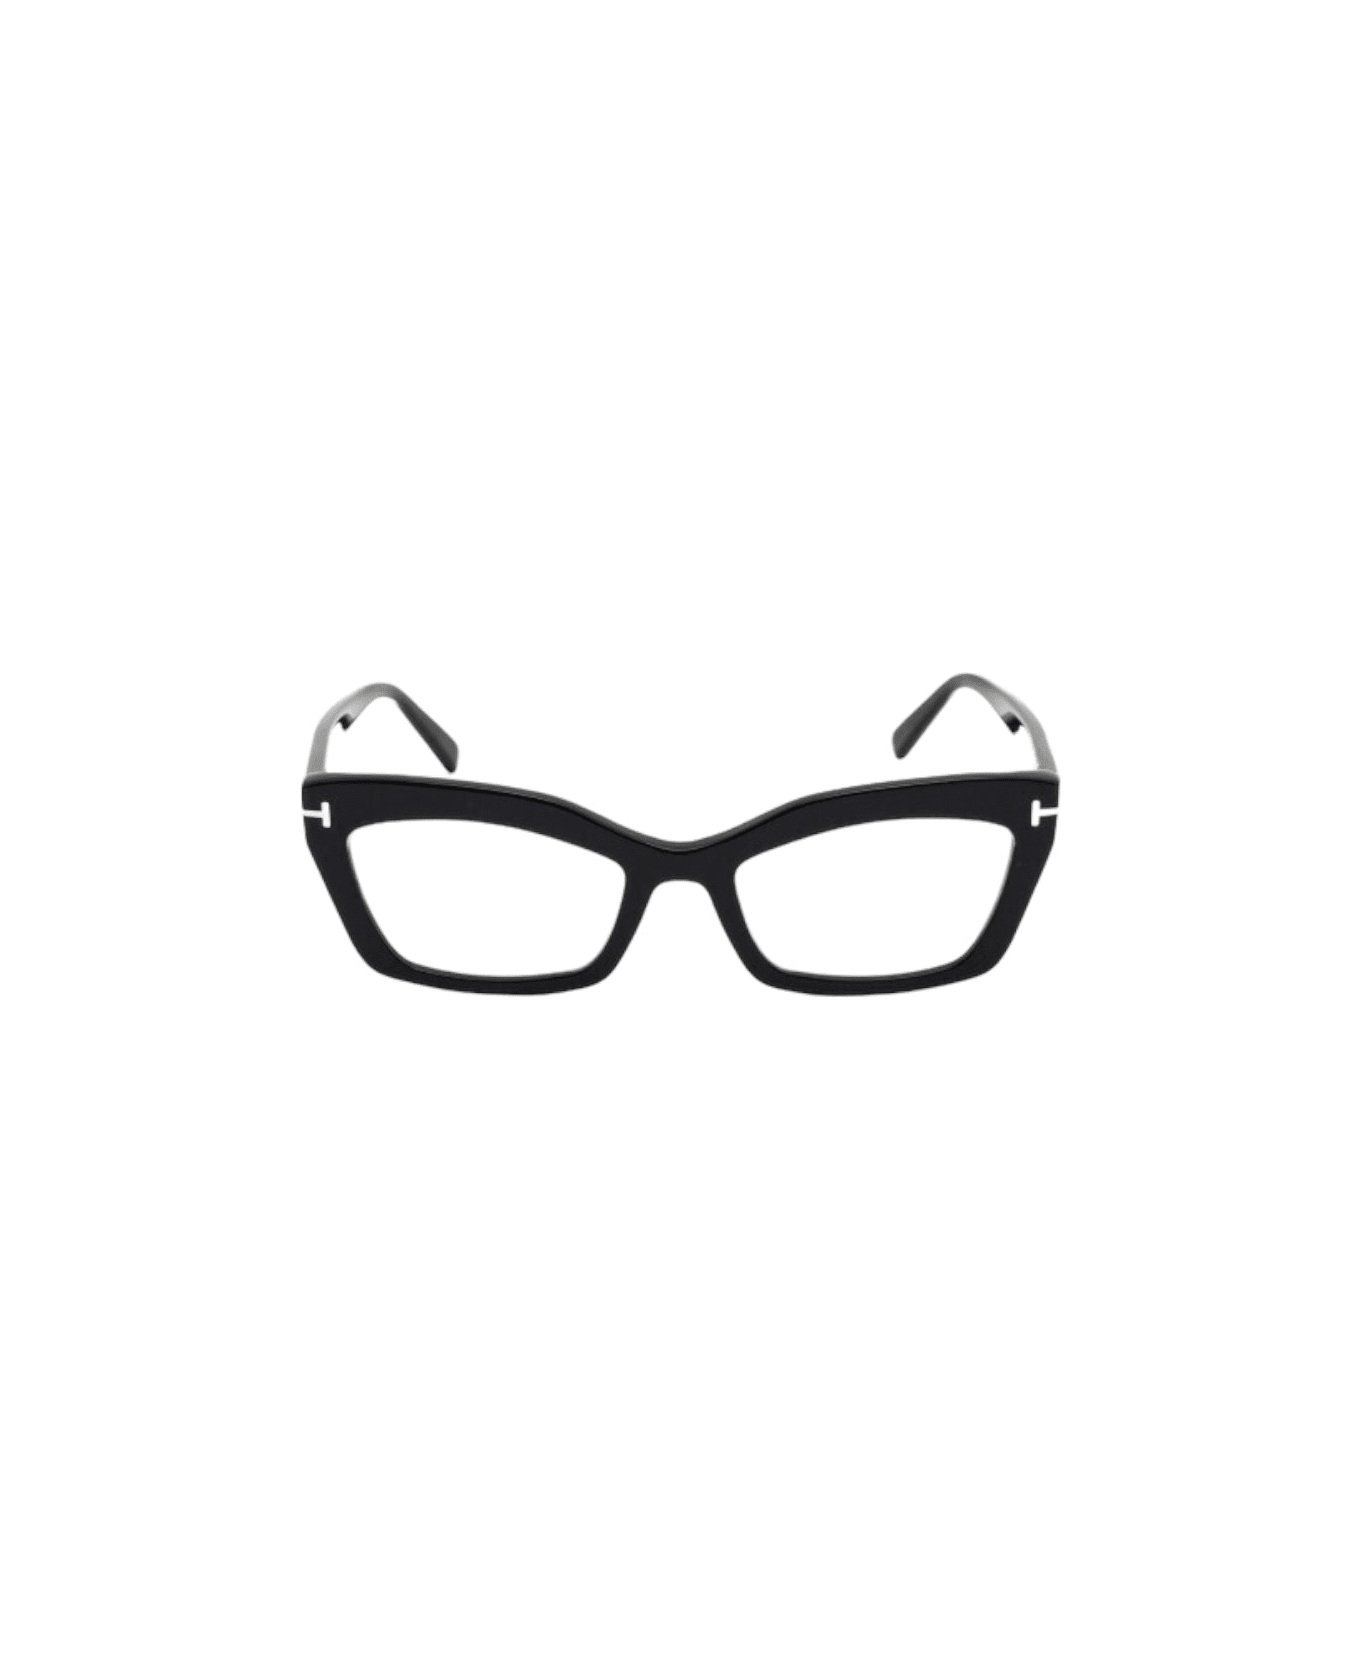 Tom Ford Eyewear Ft5766 - Black Glasses